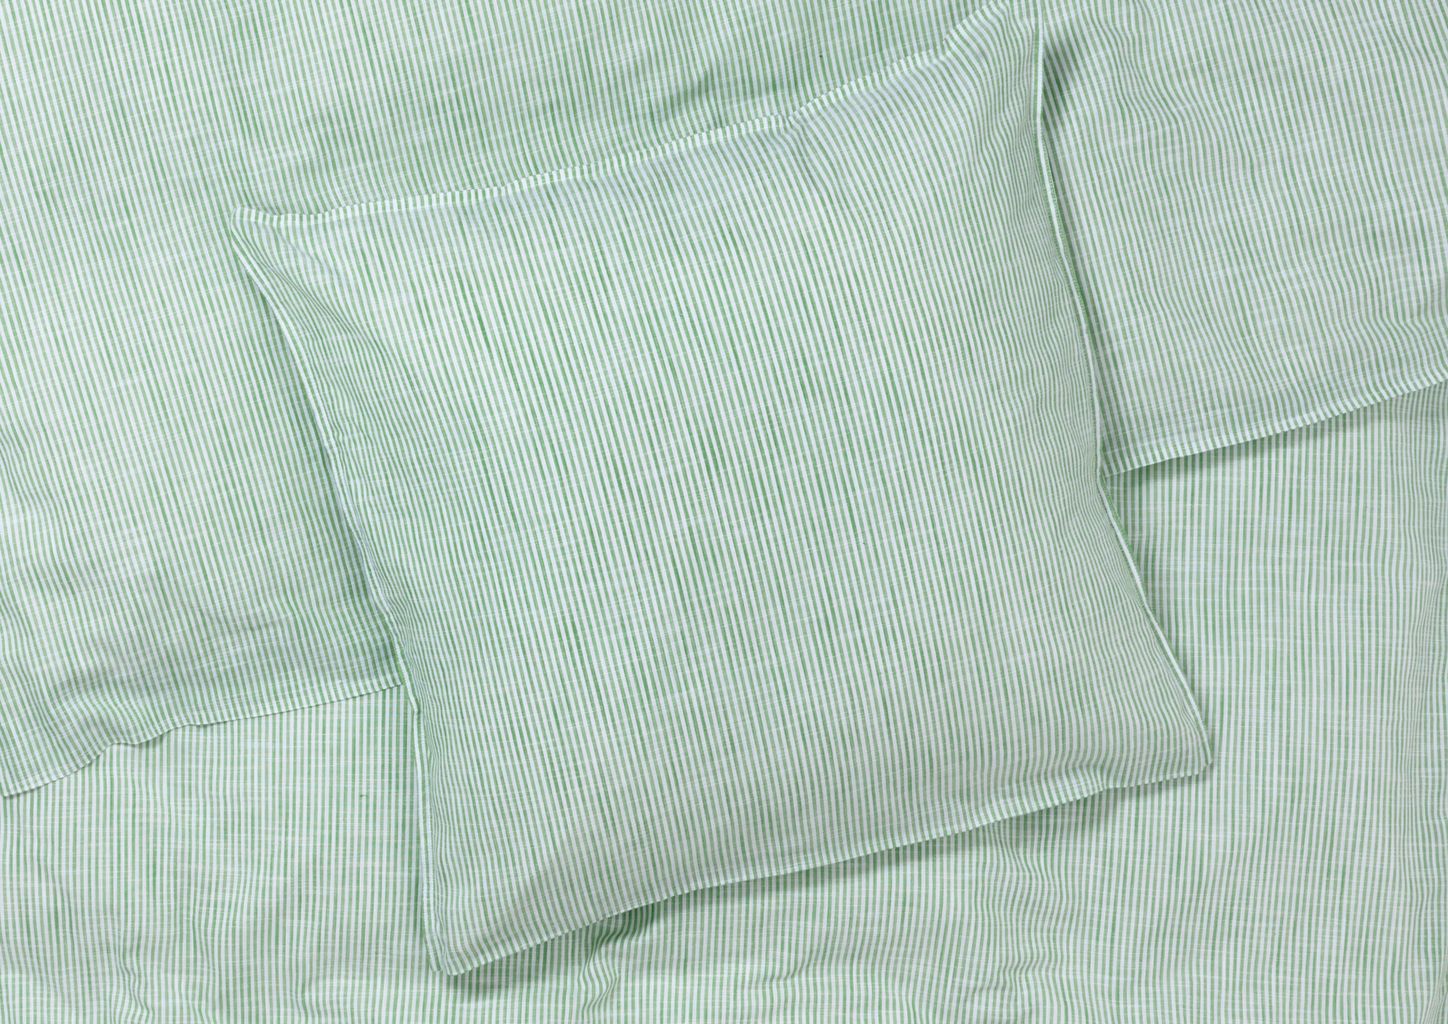 JUNA MONOQUROMA LINA CAMA DE CAMA 140 x220 cm, verde/blanco